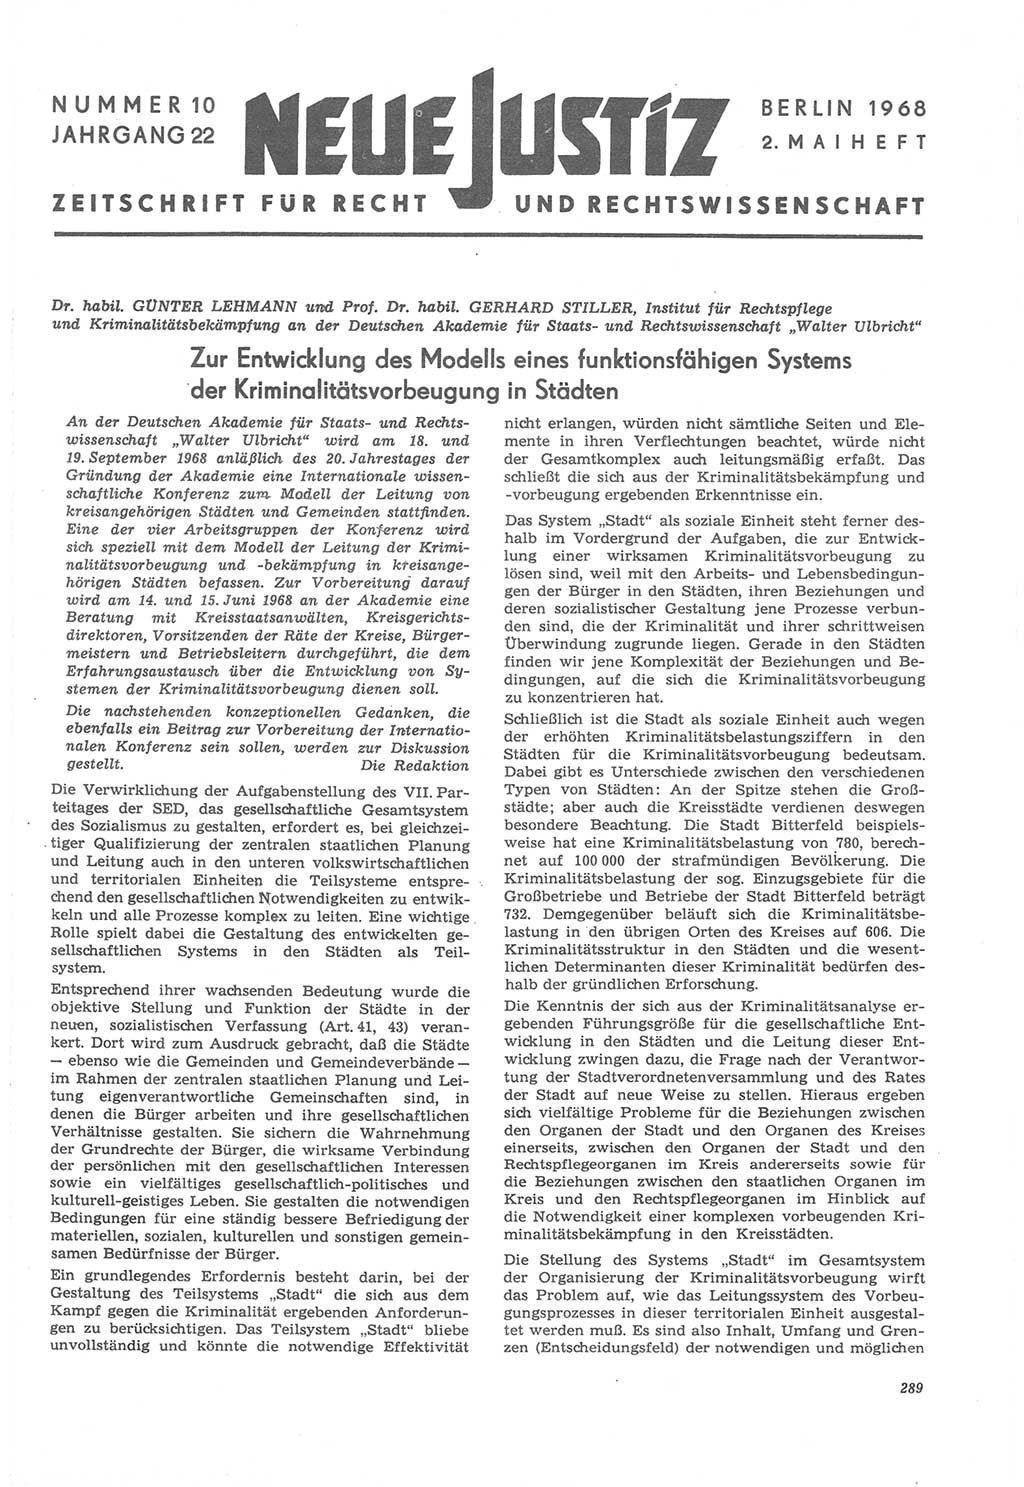 Neue Justiz (NJ), Zeitschrift für Recht und Rechtswissenschaft [Deutsche Demokratische Republik (DDR)], 22. Jahrgang 1968, Seite 289 (NJ DDR 1968, S. 289)